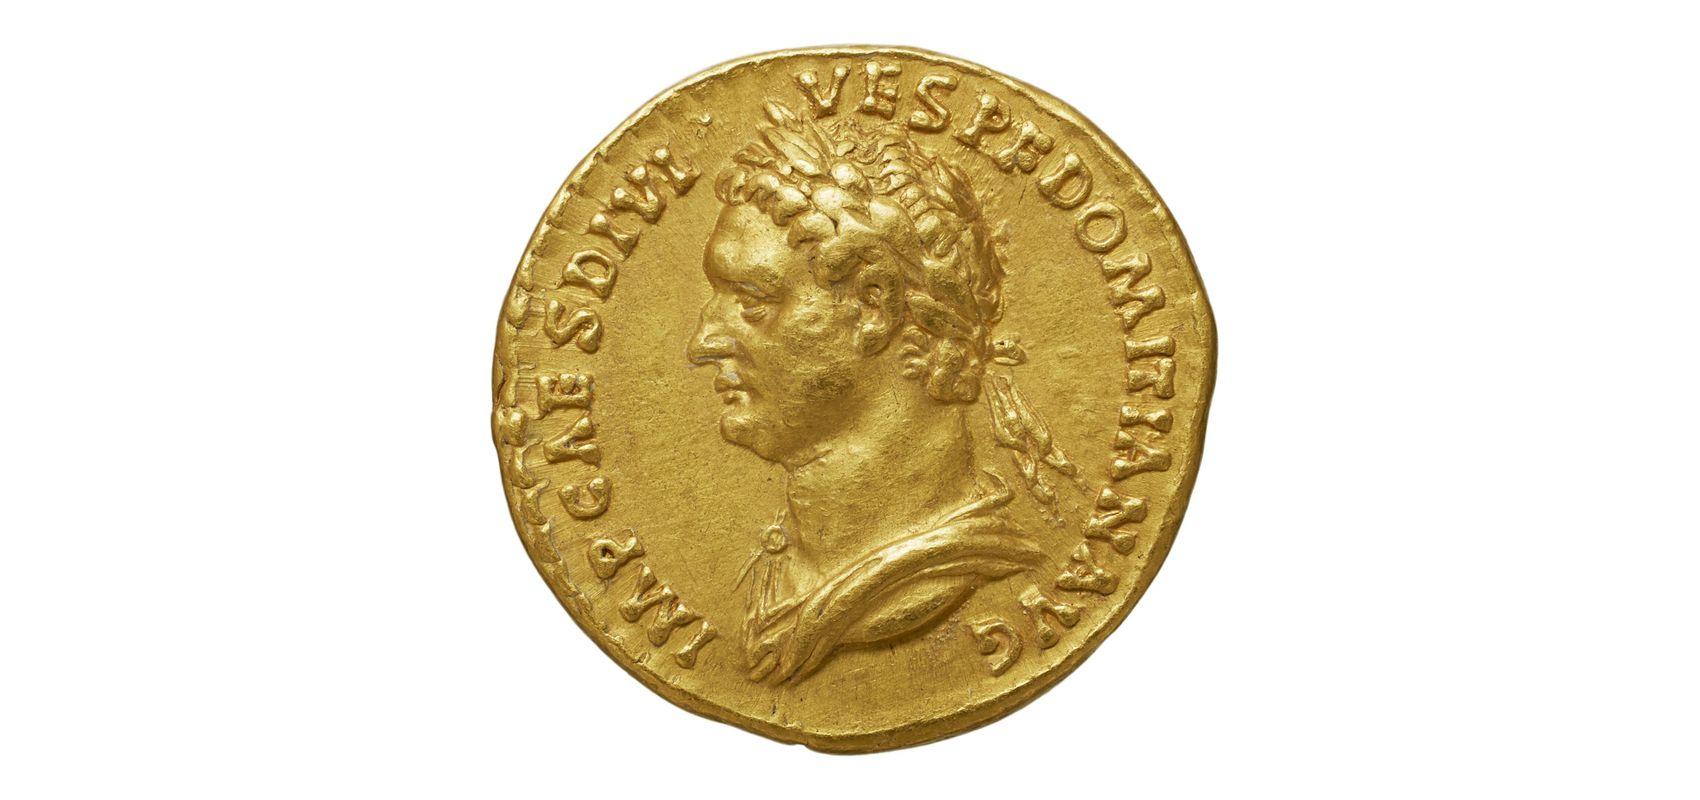 Monnaie. Aureus, Domitien, Rome - Ier siècle - BnF, département des Monnaies, médailles et antiques